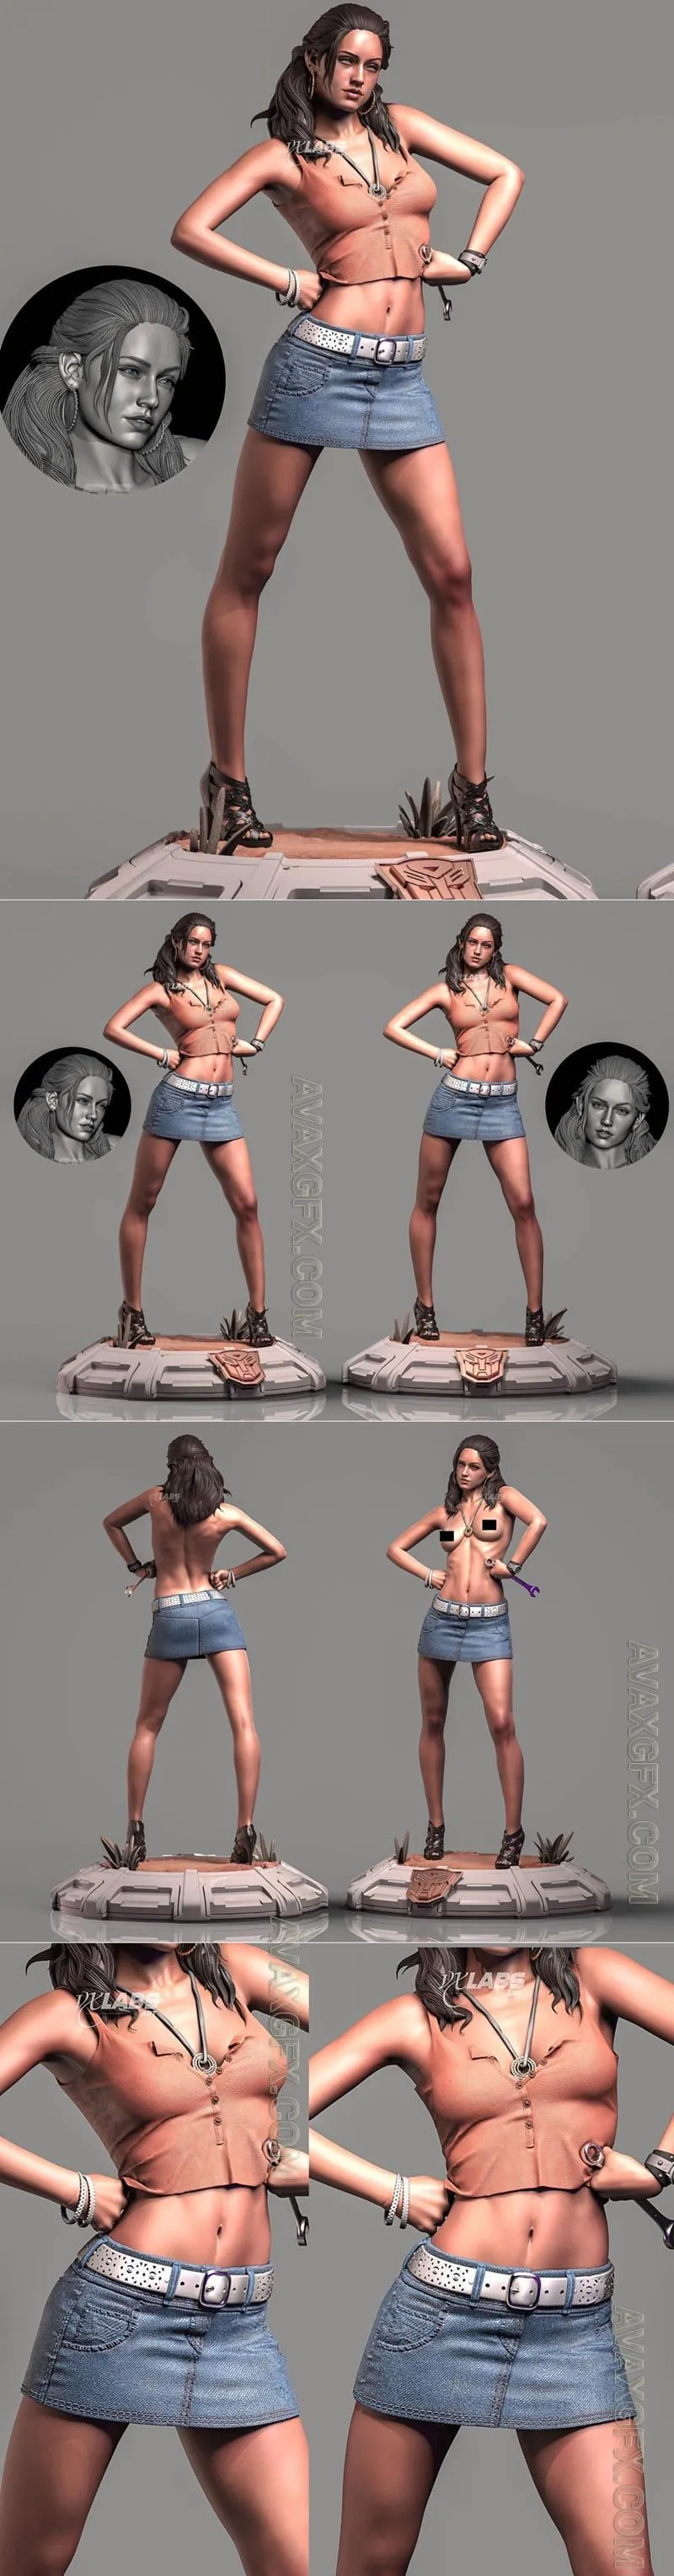 VX-Labs - Megan Fox - Transformers - STL 3D Model